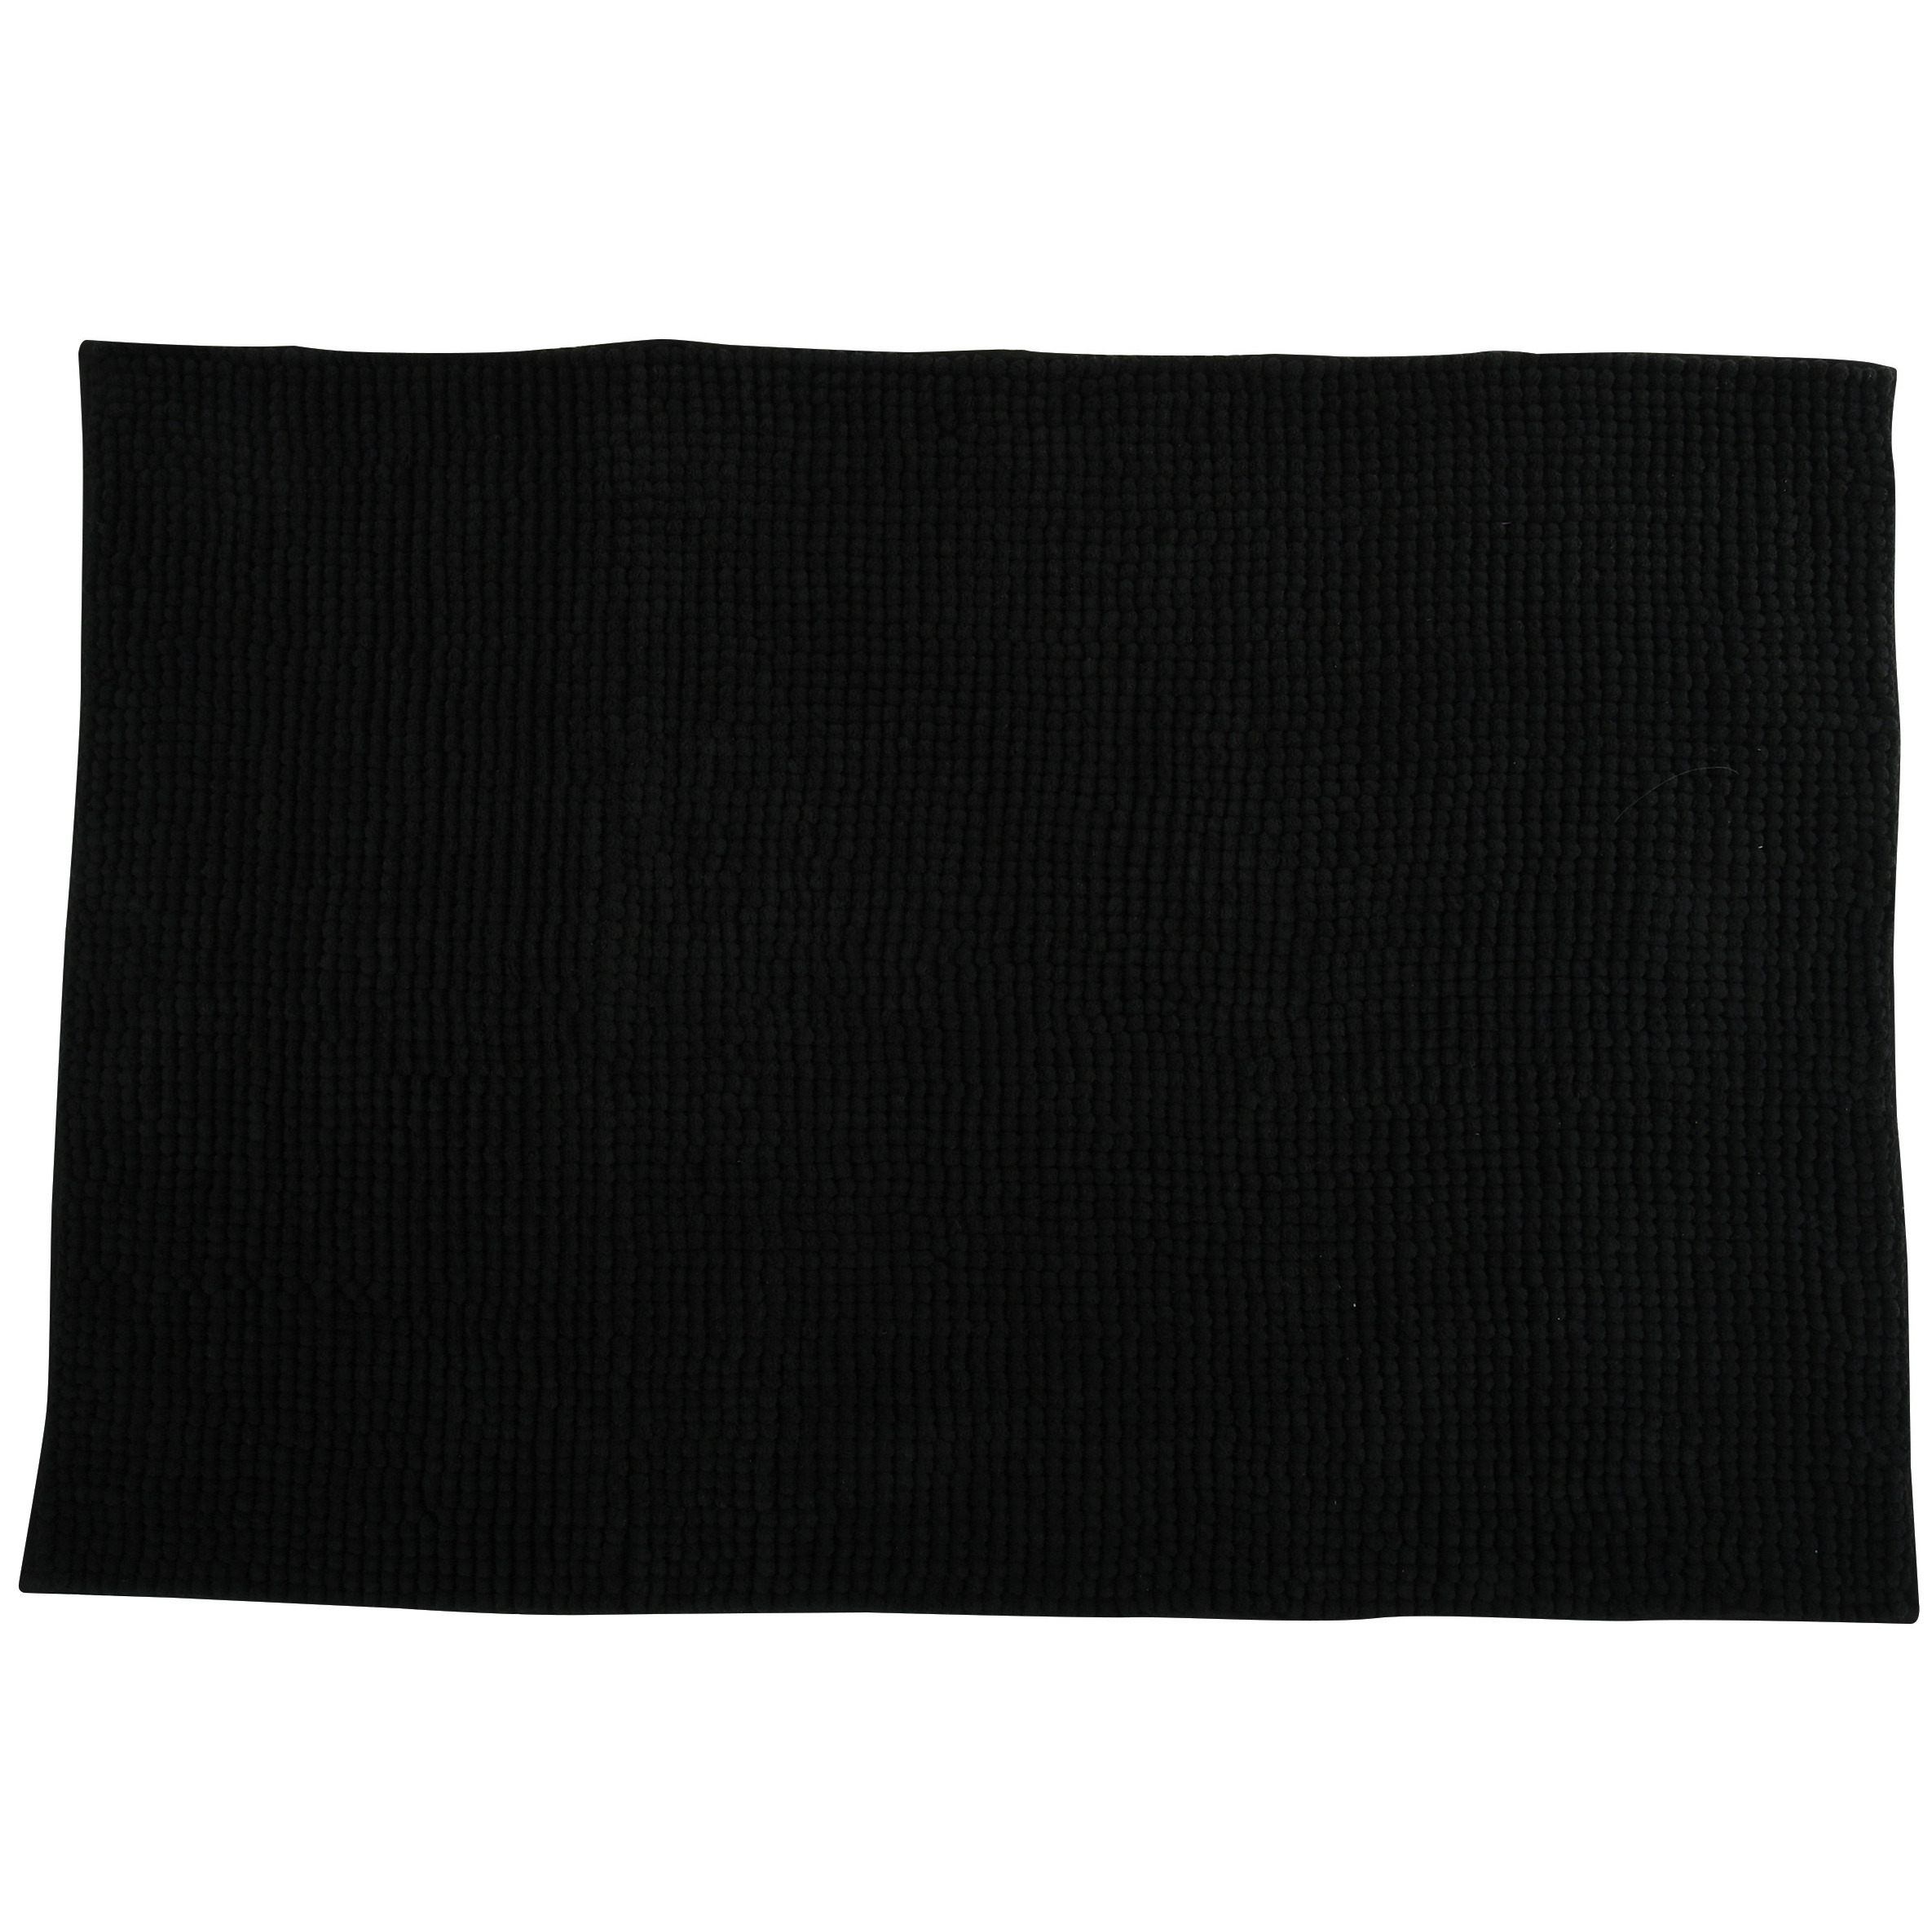 Badkamerkleedje-badmat tapijt voor op de vloer zwart 60 x 90 cm